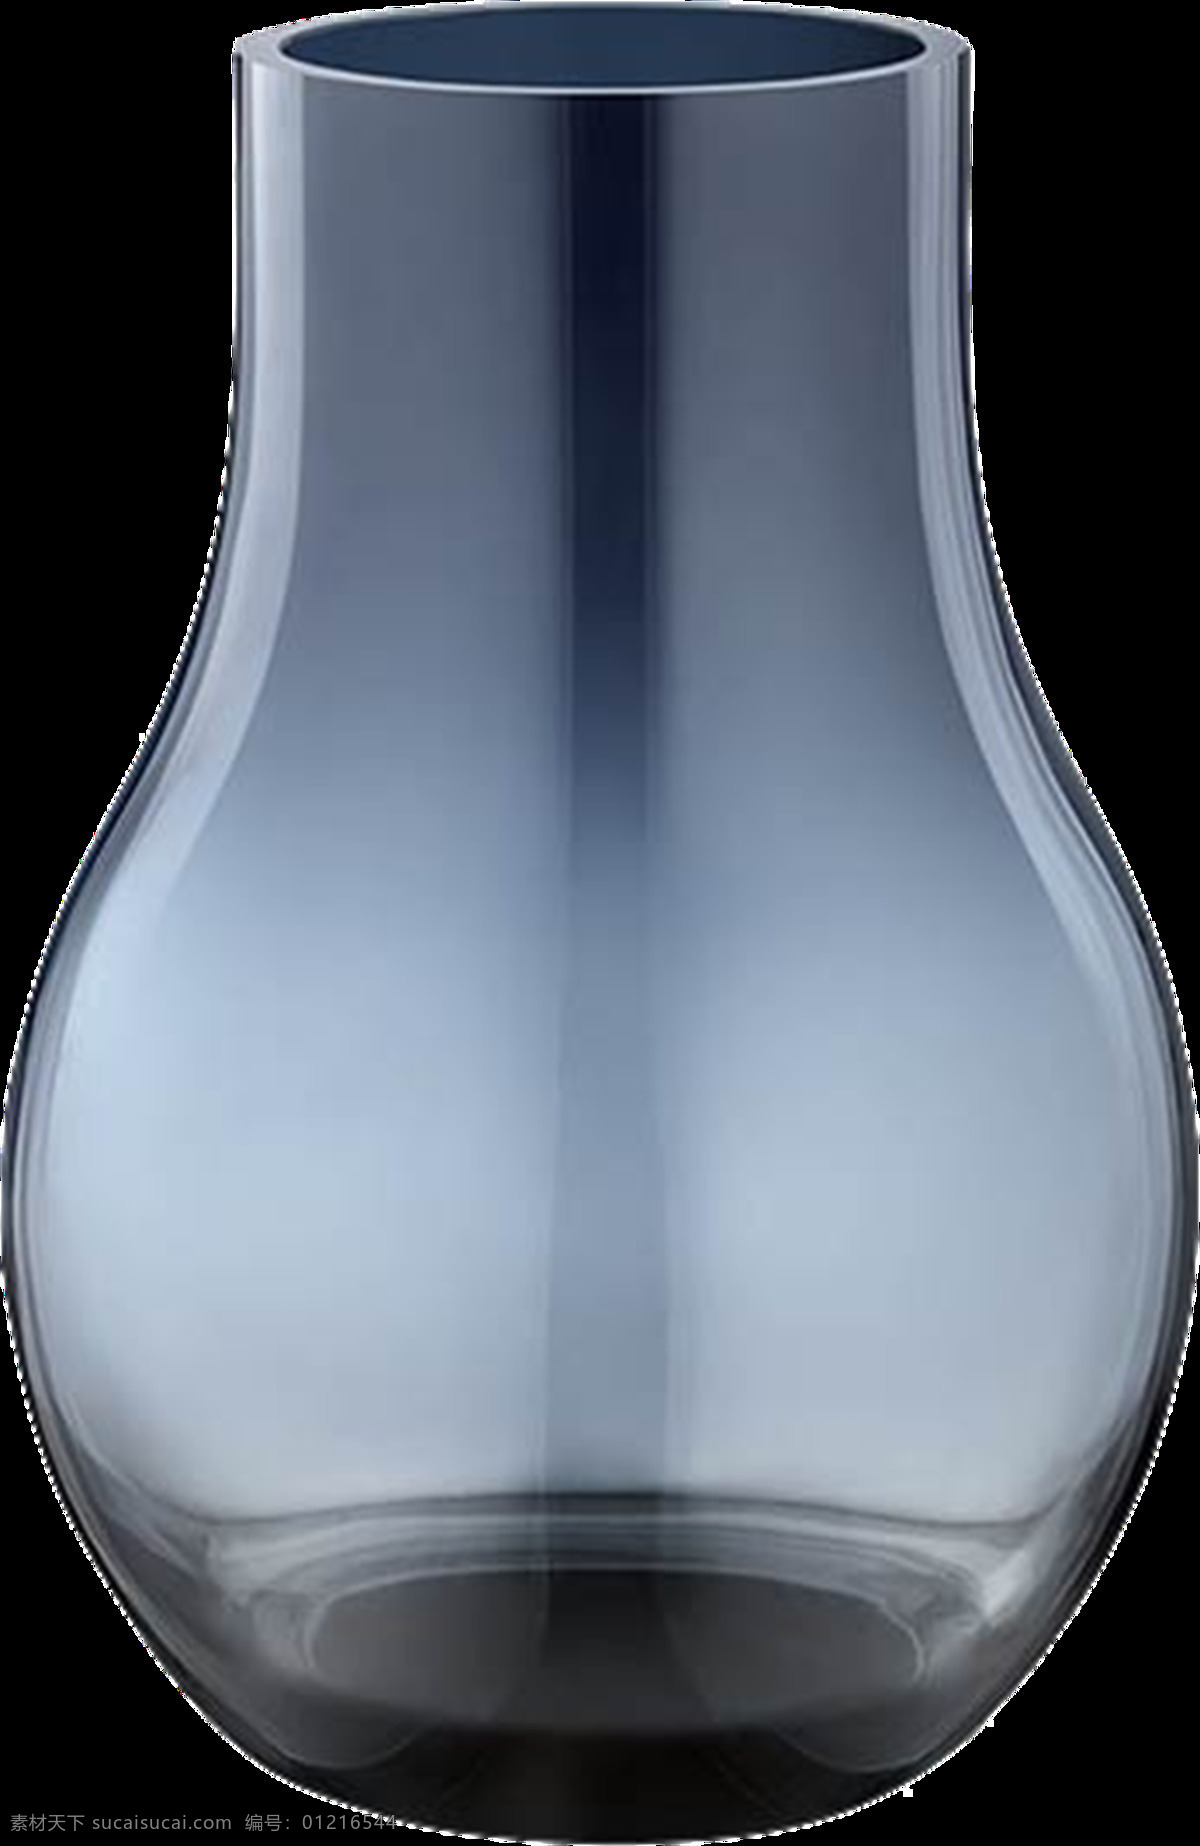 花瓶图片 花瓶 瓷瓶 瓶子 陶瓶 陶瓷 瓶 瓷器 陶器 玻璃瓶 文物 装饰摆设 装饰 摆设 png图 透明图 免扣图 透明背景 透明底 抠图